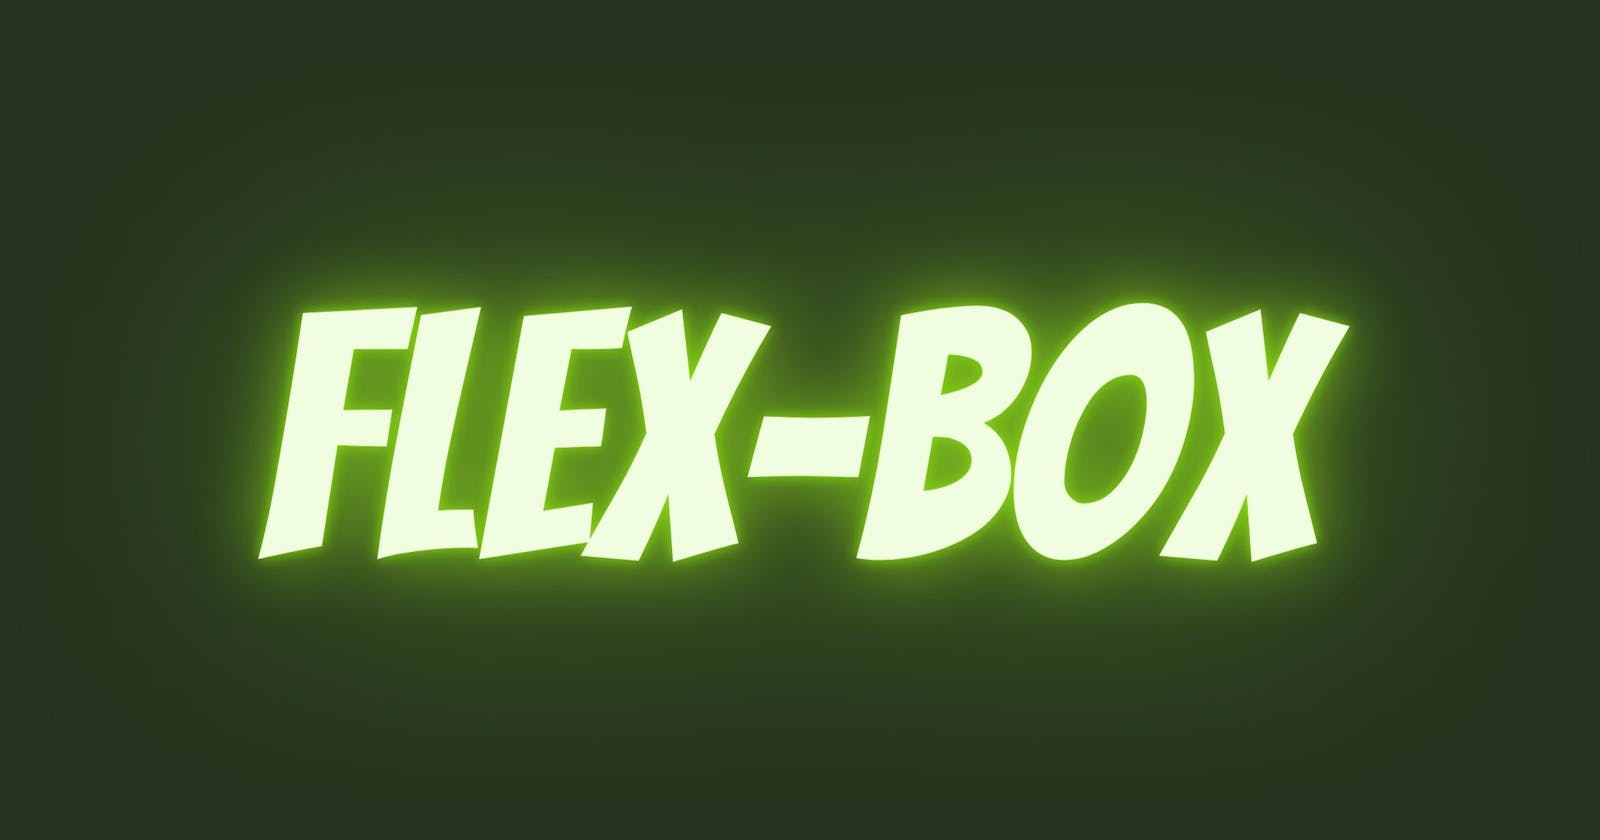 Learn CSS Flex-Box